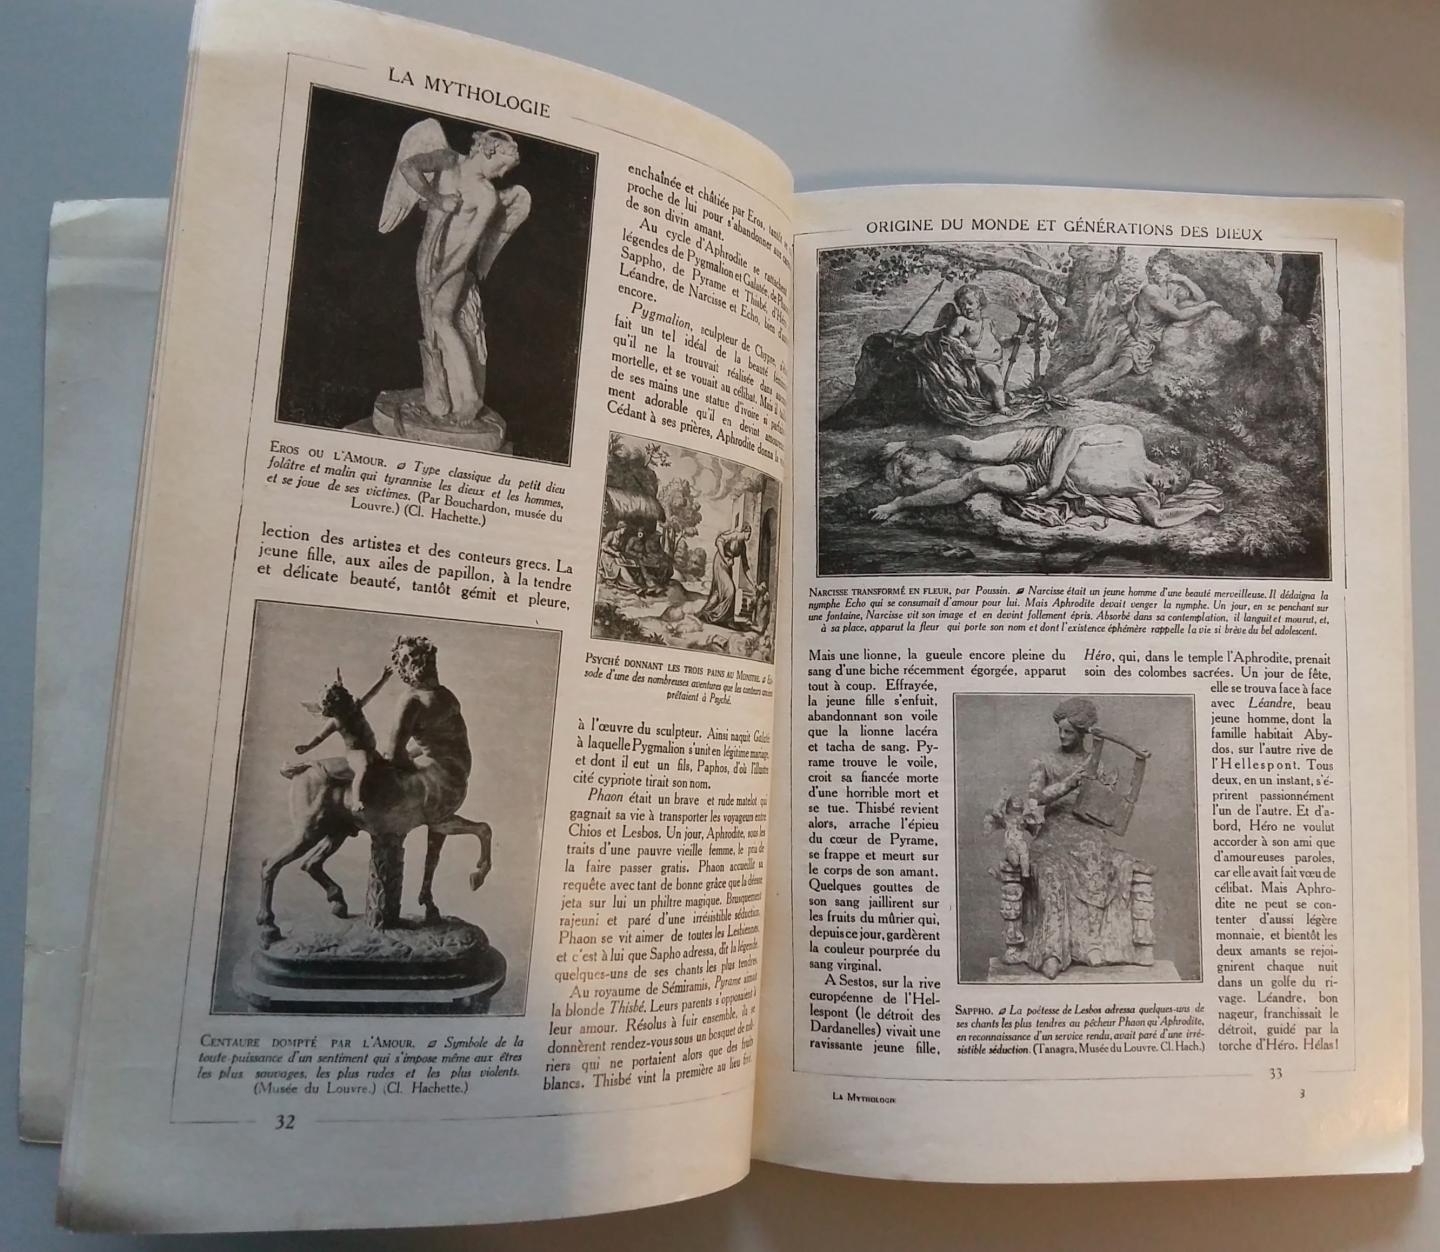  - La Mythologie - Encyclopédie par l'image, Librairie Hachette